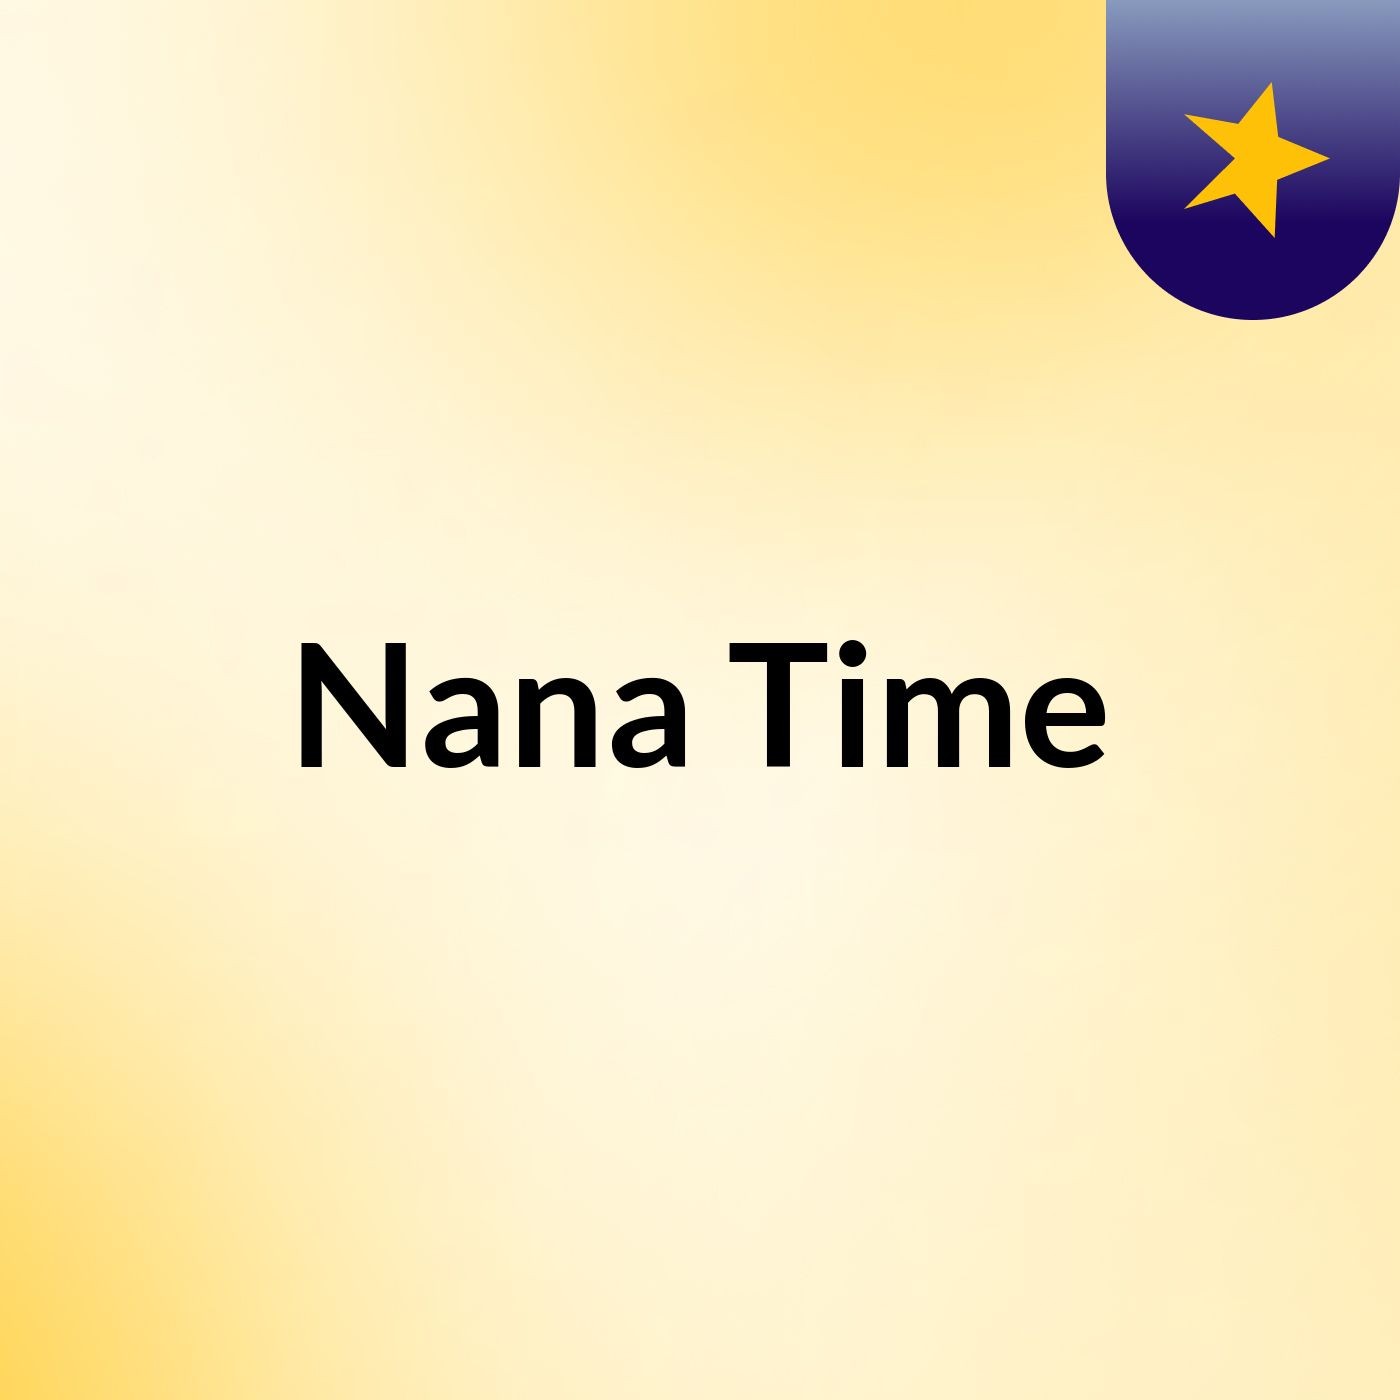 Nana Time